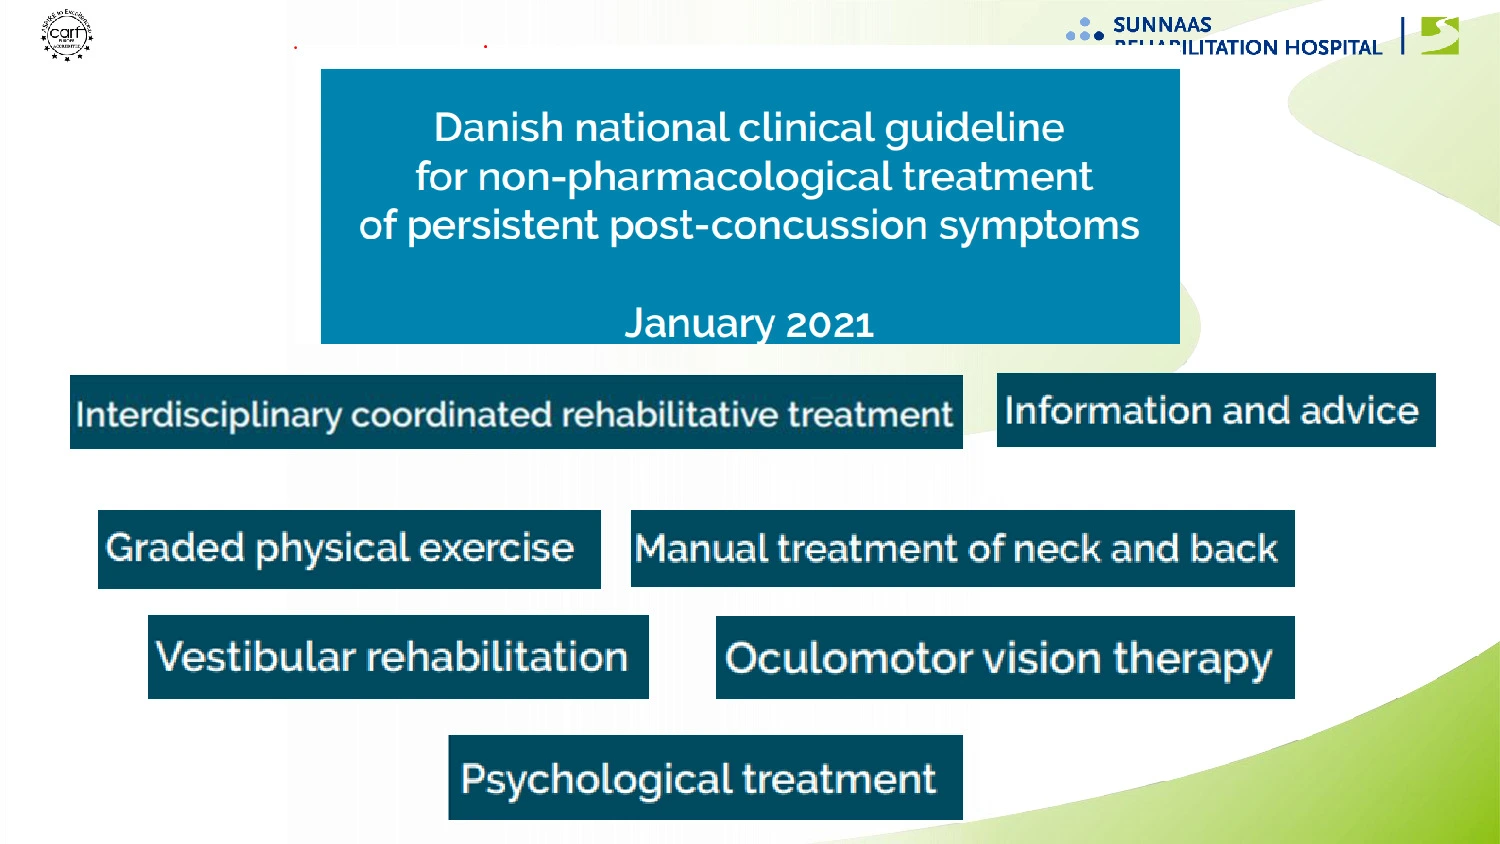 Oversigt over de ikke-farmakologiske tiltag, der indgår i behandling af PCS-ramte ifølge den danske nationale kliniske guideline